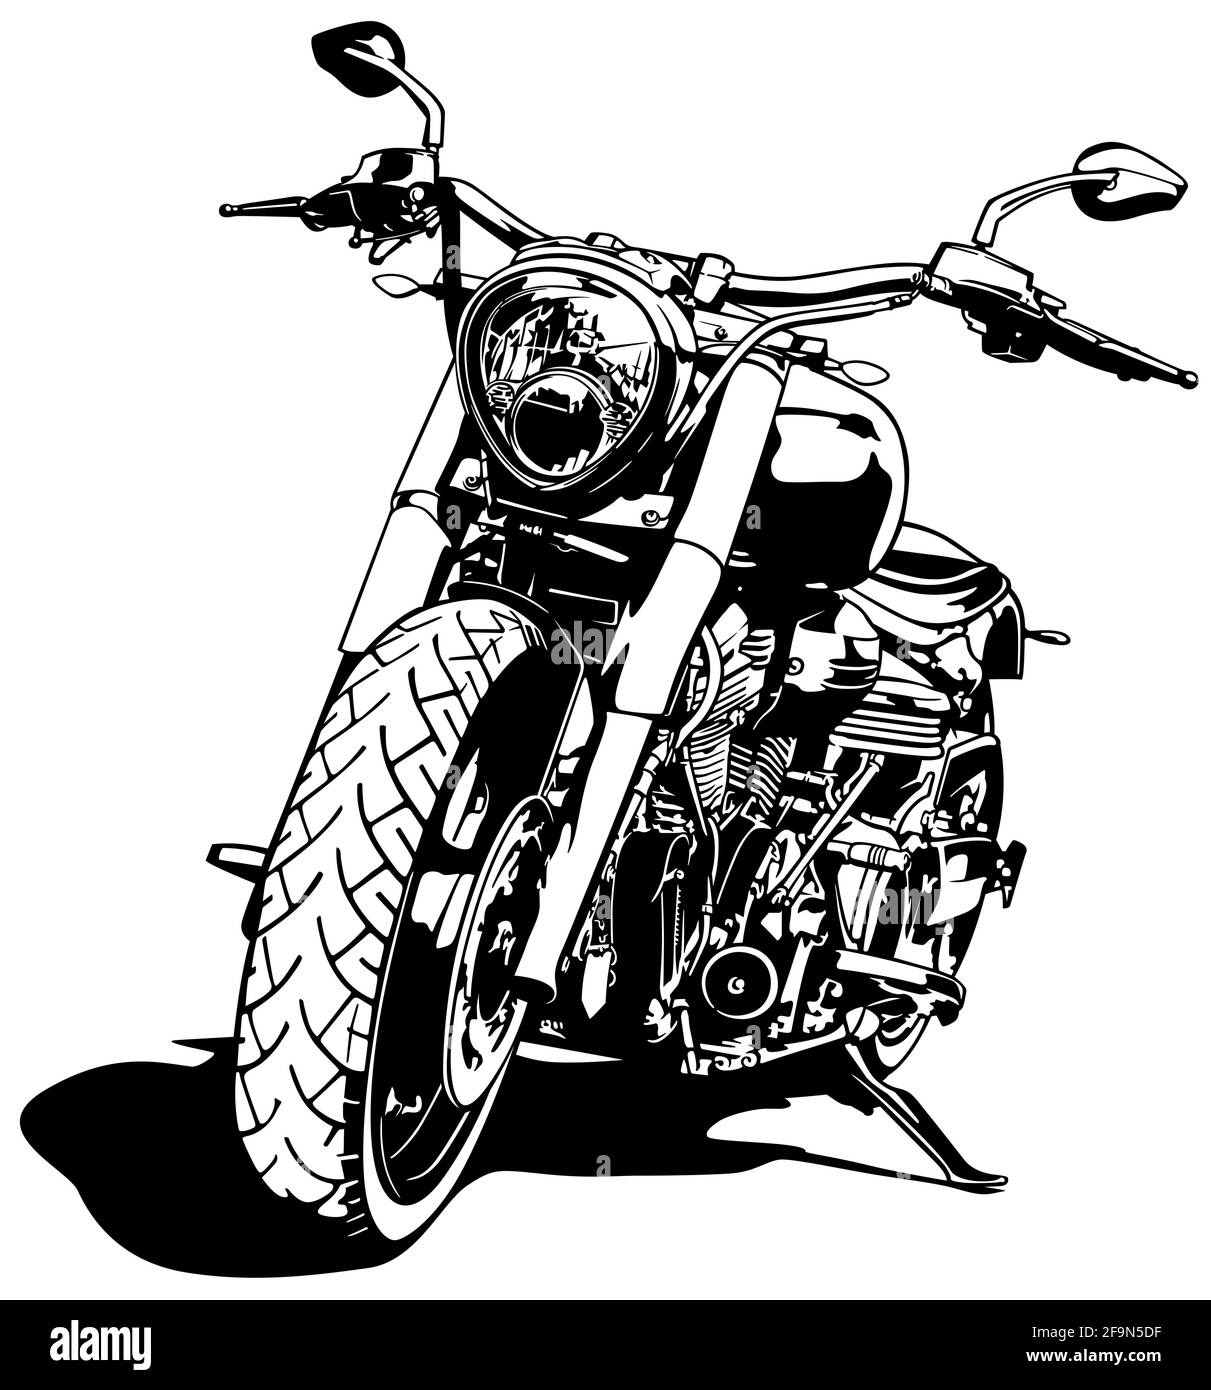 Schwarz und Weiß Motorrad Zeichnung Stock-Vektorgrafik - Alamy